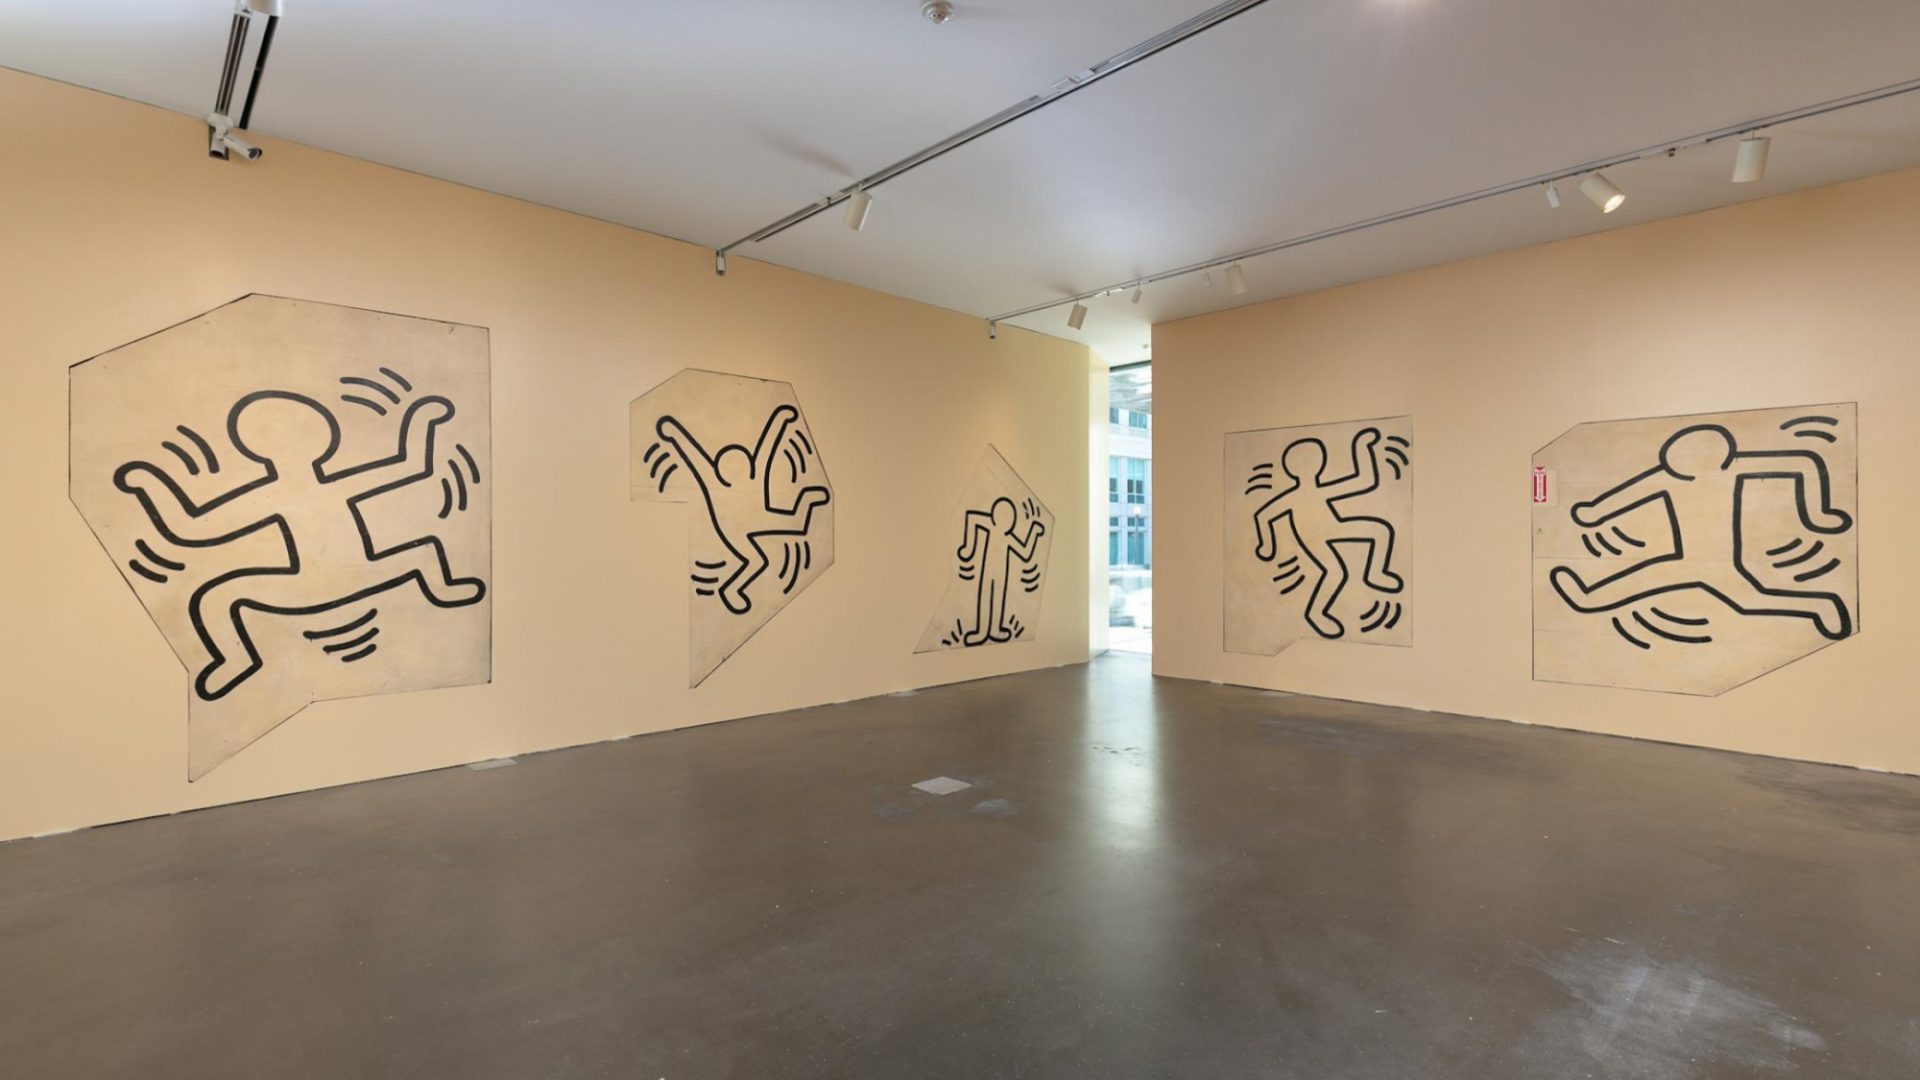 Uniek werk van wereldberoemde kunstenaar Keith Haring naar Heerlen